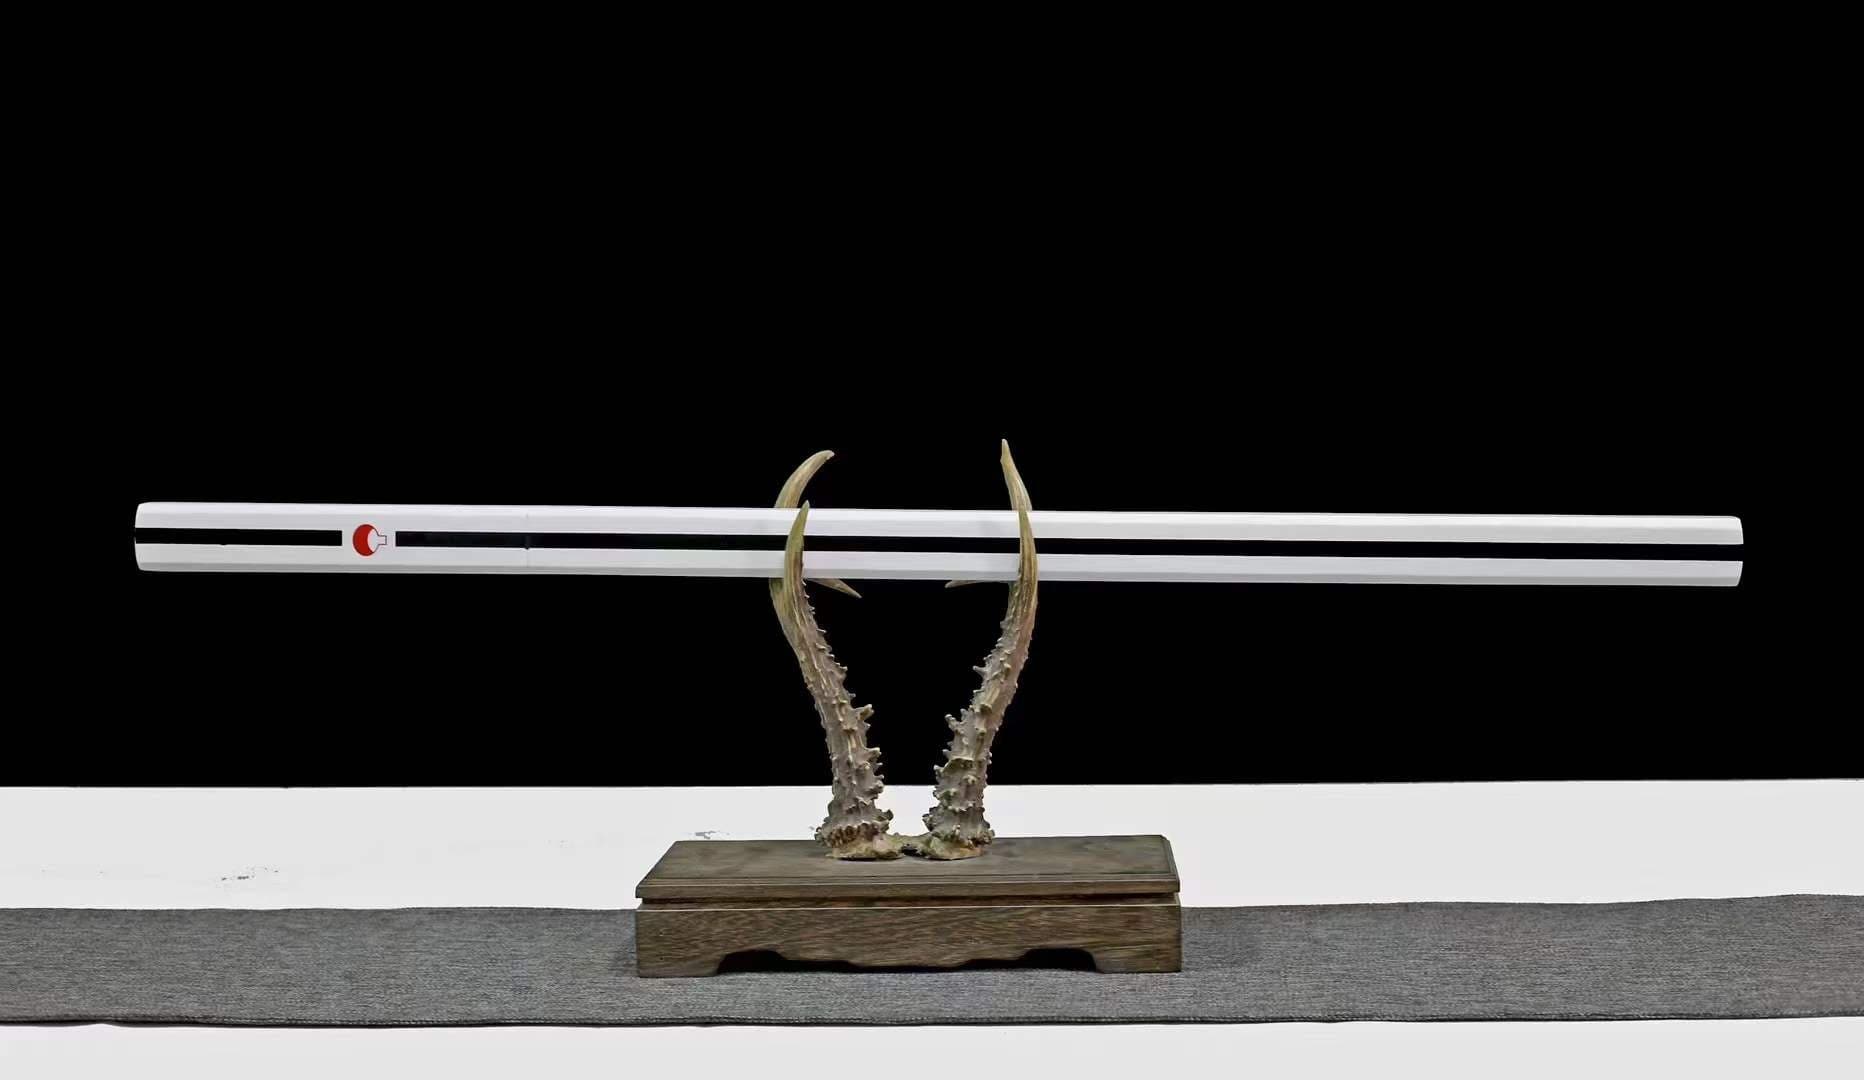 This is the Handmade Sasuke Uchiha Sword of Kusanagi . Blade is Very Sharp.